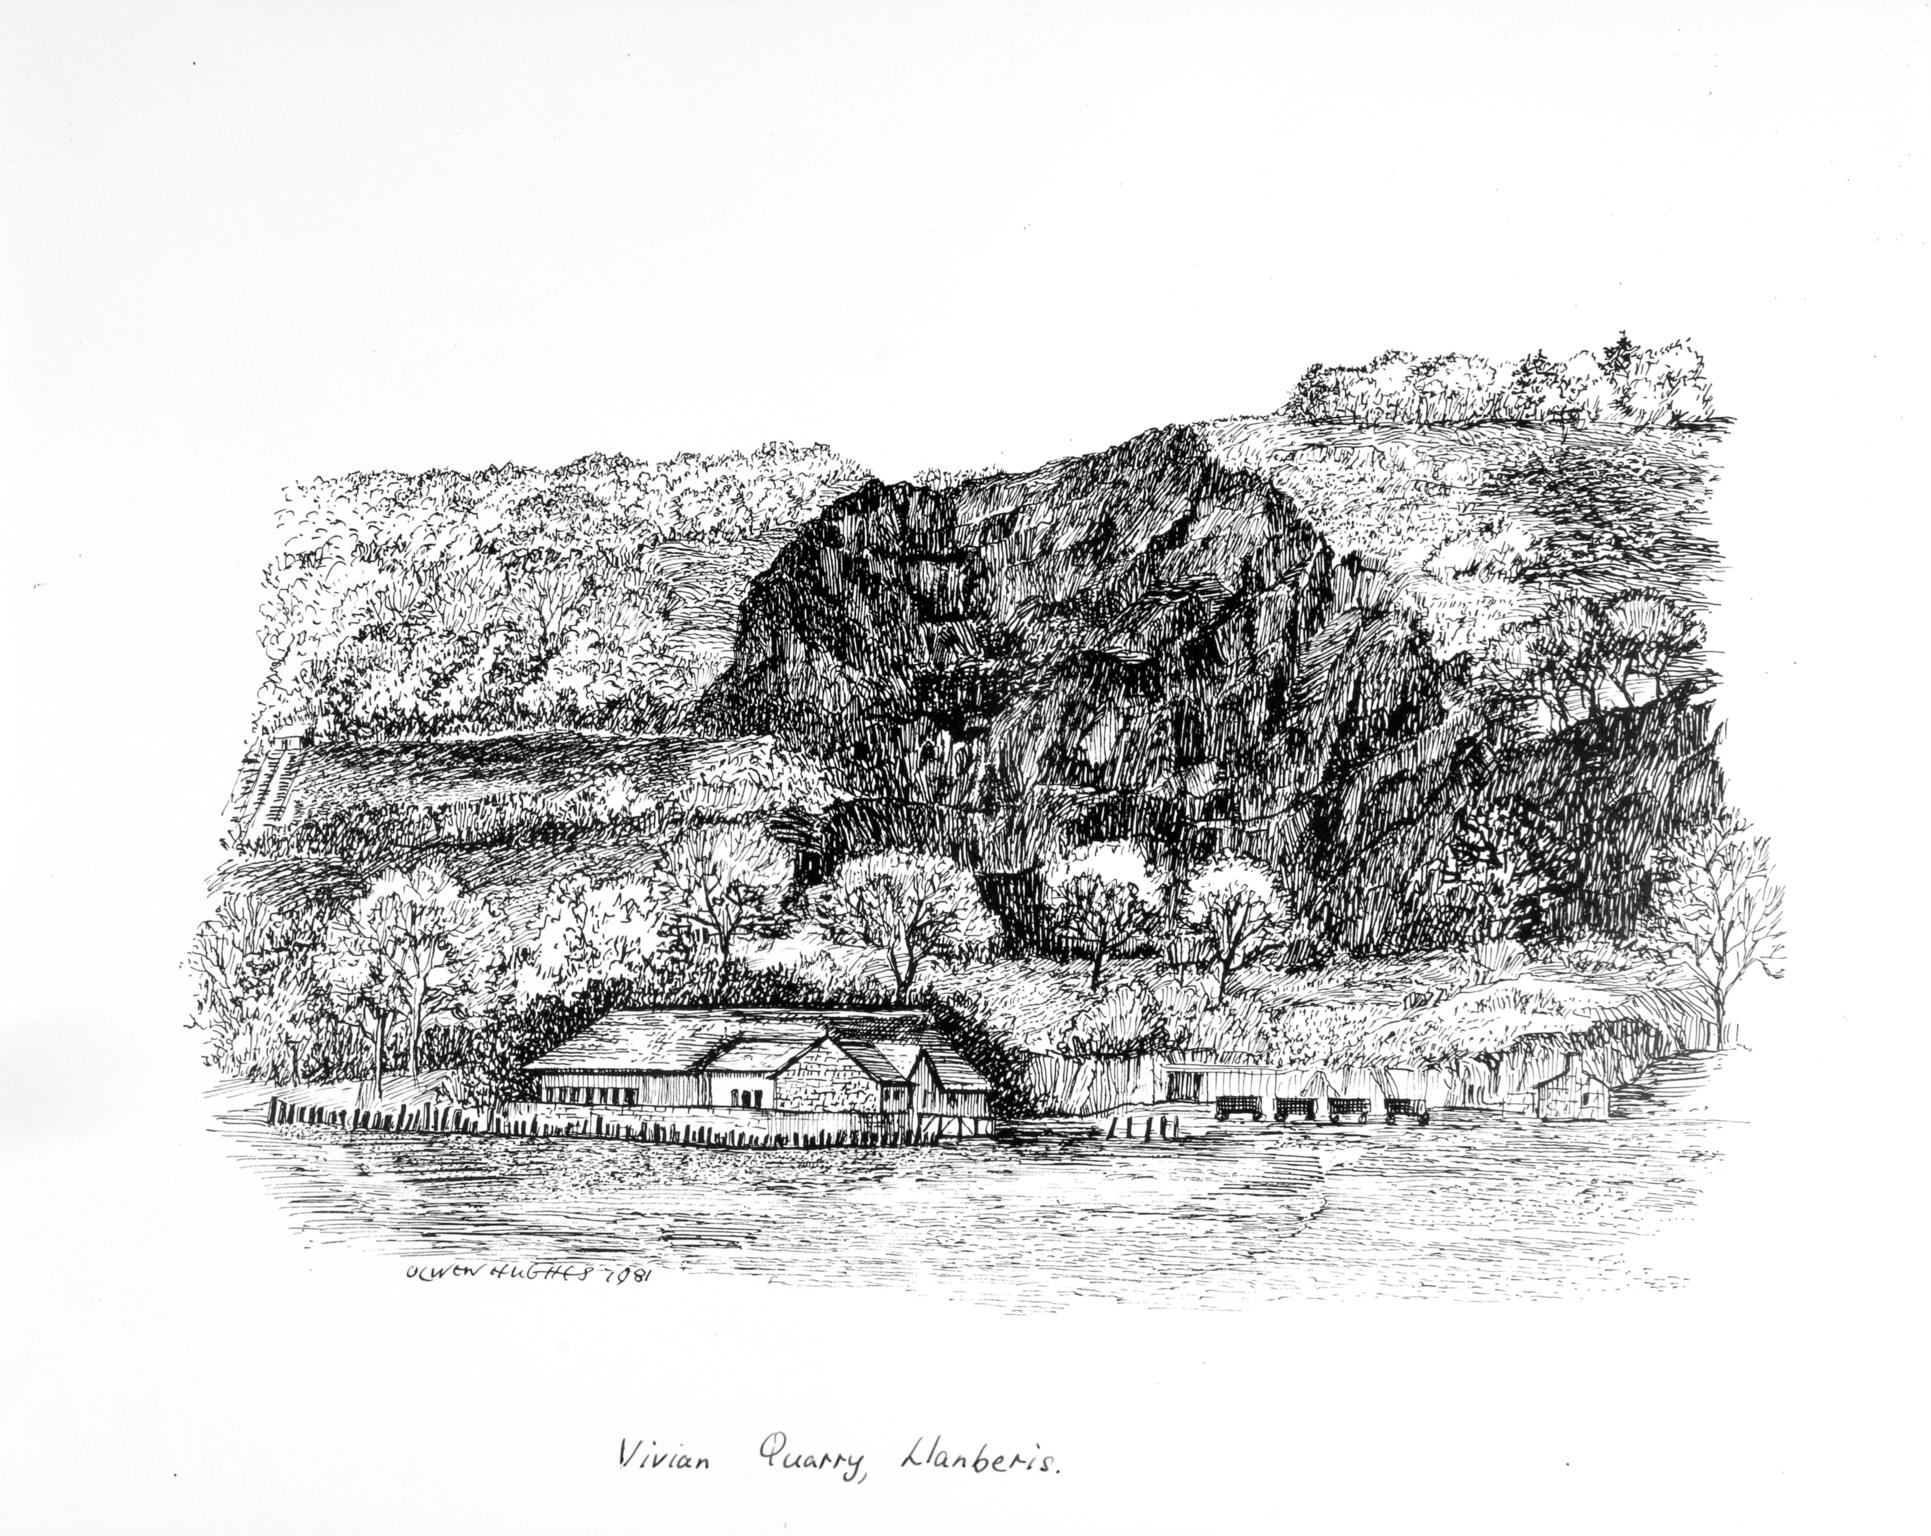 Vivian Quarry, Llanberis (print)